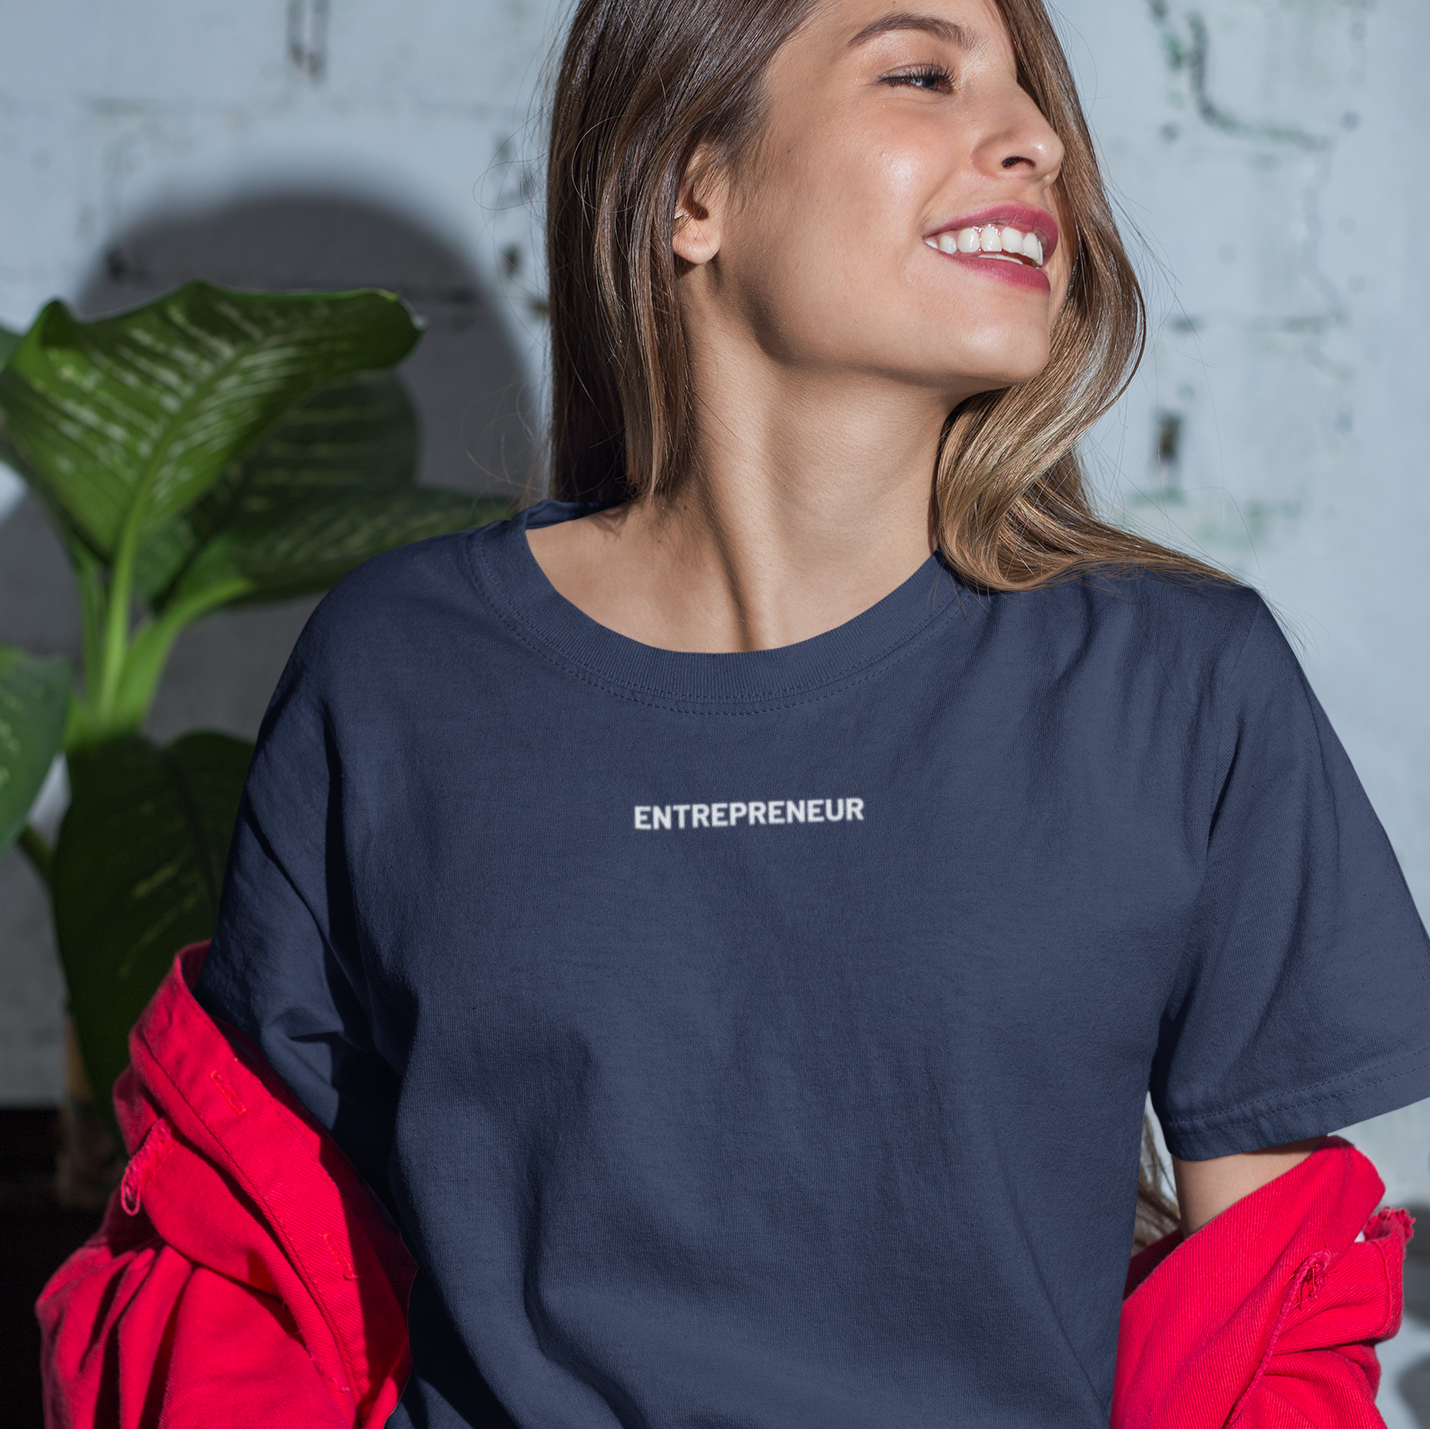 Women's Entrepreneur Embroidered Shirt